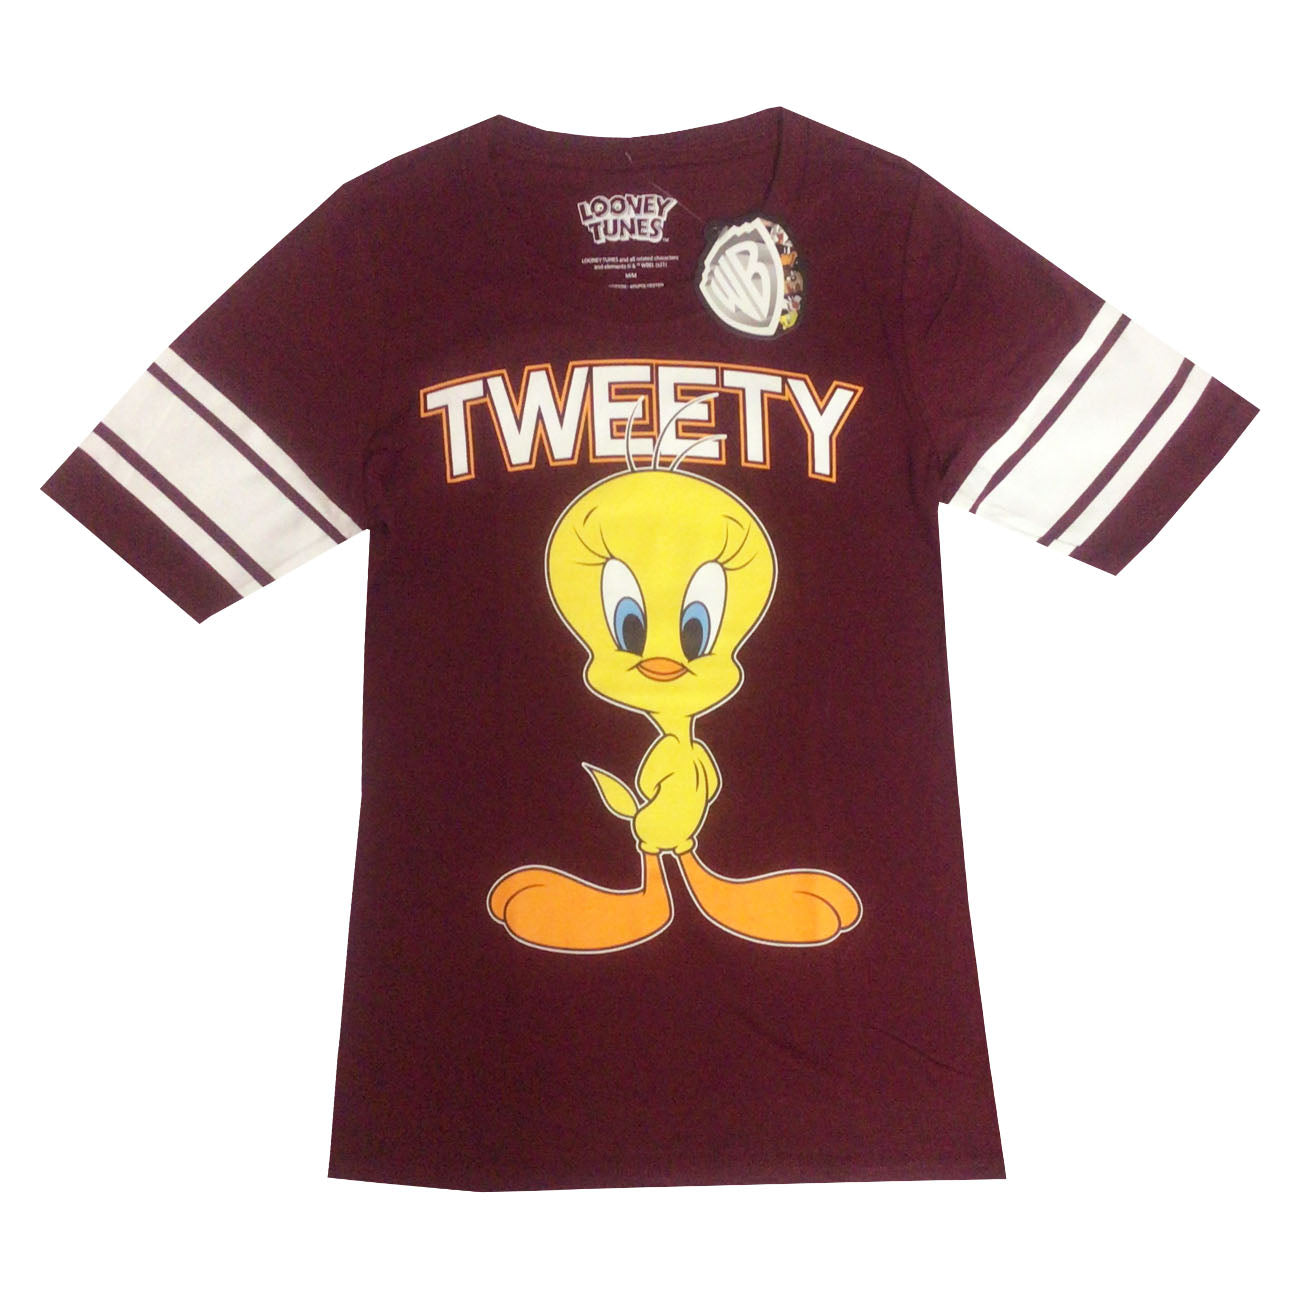 Women's T-shirt Tweety Tee Looney Tunes Burgundy Cotton S M L XL